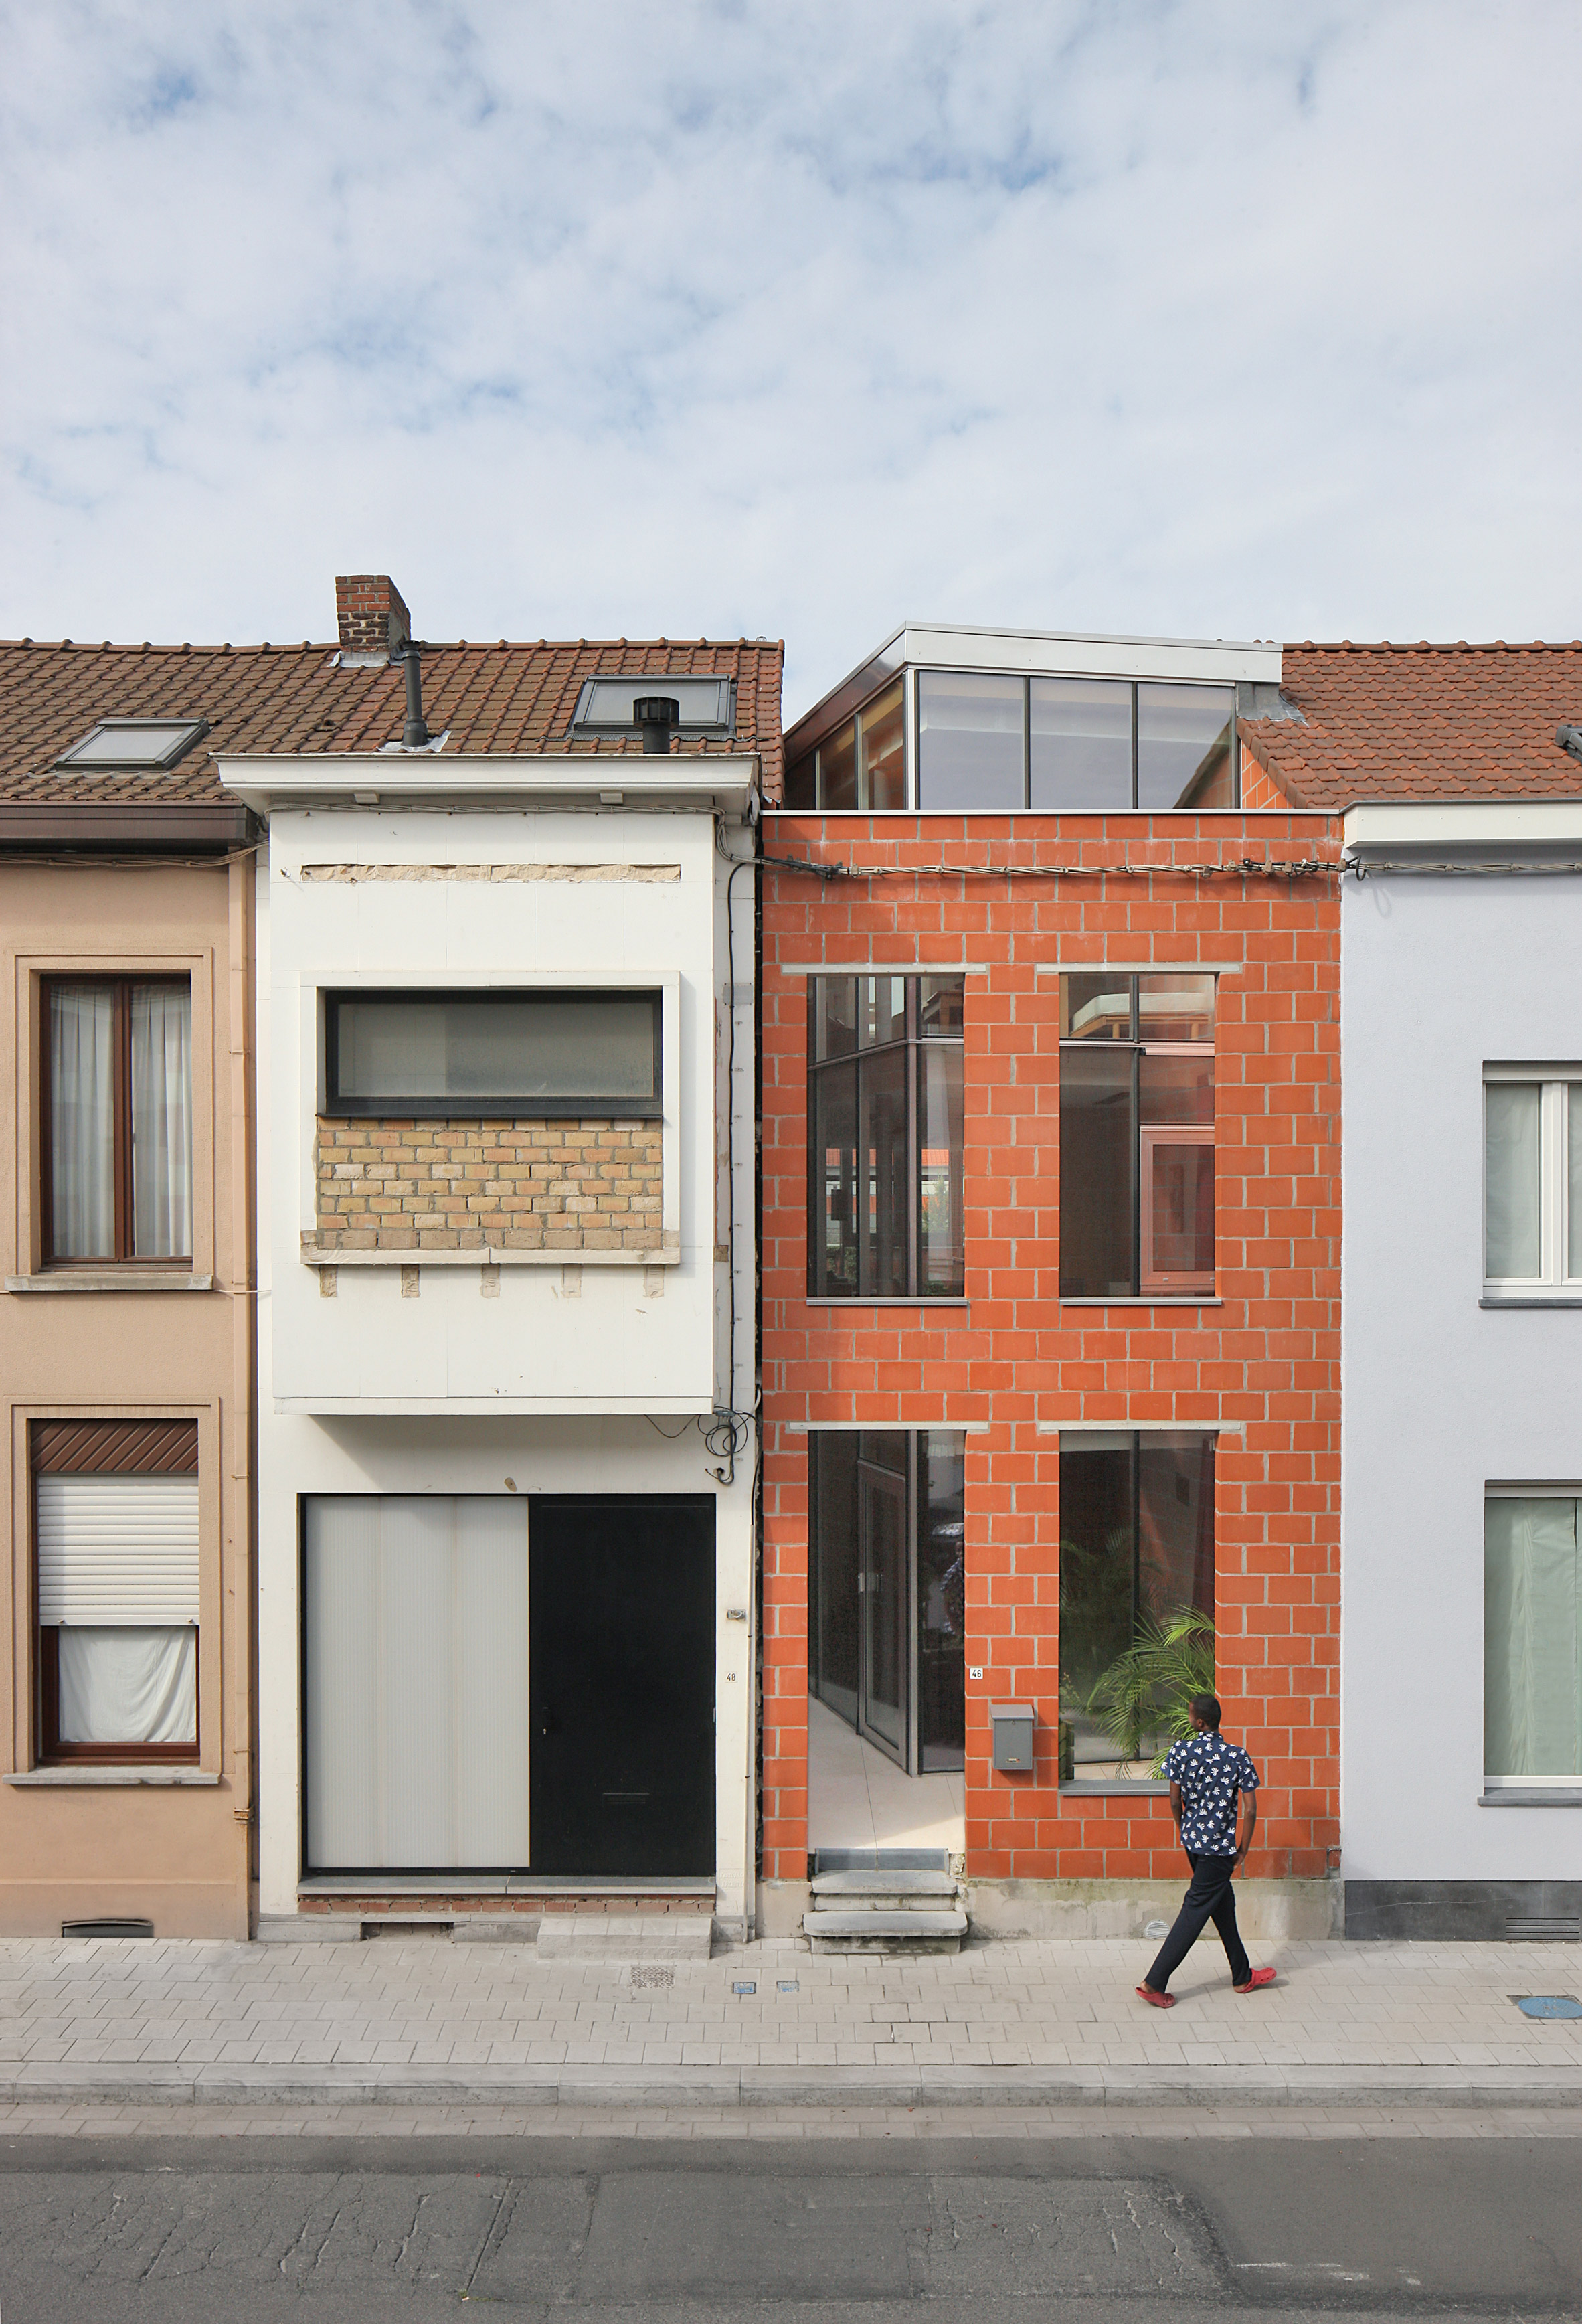 House SSK by De Baes Associates and Sophie van Noten